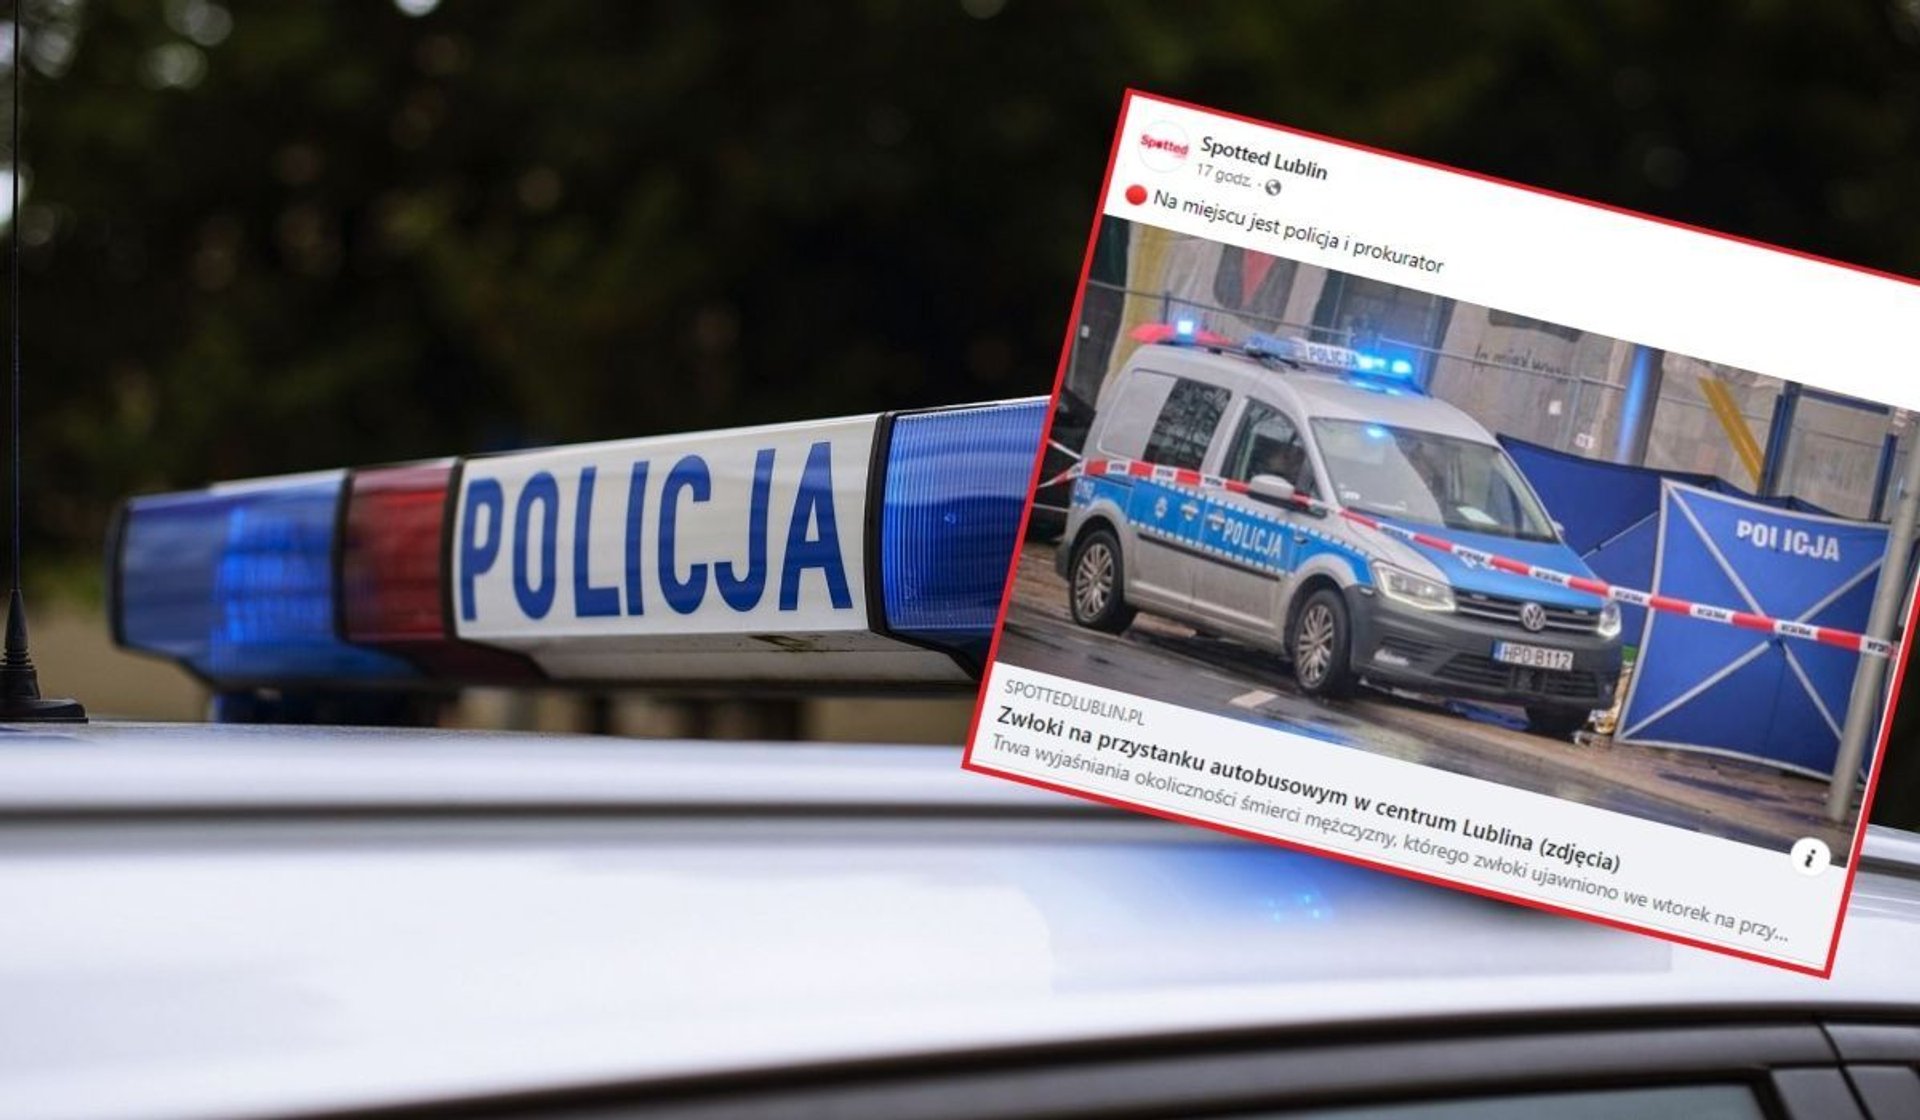 Lublin: Tragedia w centrum miasta. 68-letni mężczyzna zmarł na przystanku autobusowym